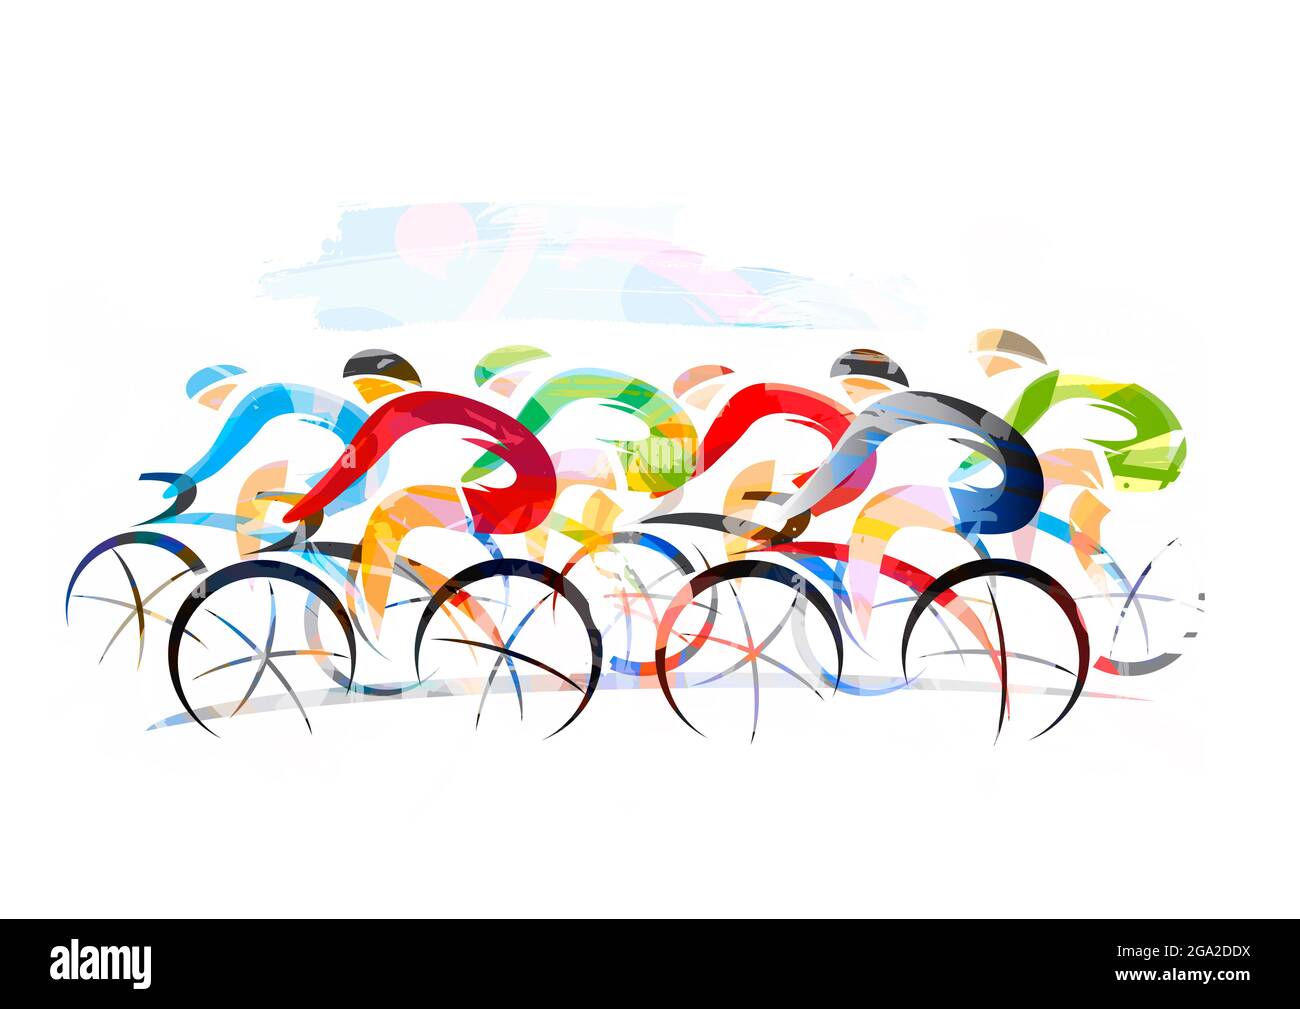 Radrennen, Straßenradsport. Ausdrucksstarke Illustration von Radfahrern in voller Geschwindigkeit. Imitation der Pinselzeichnung. Stockfoto